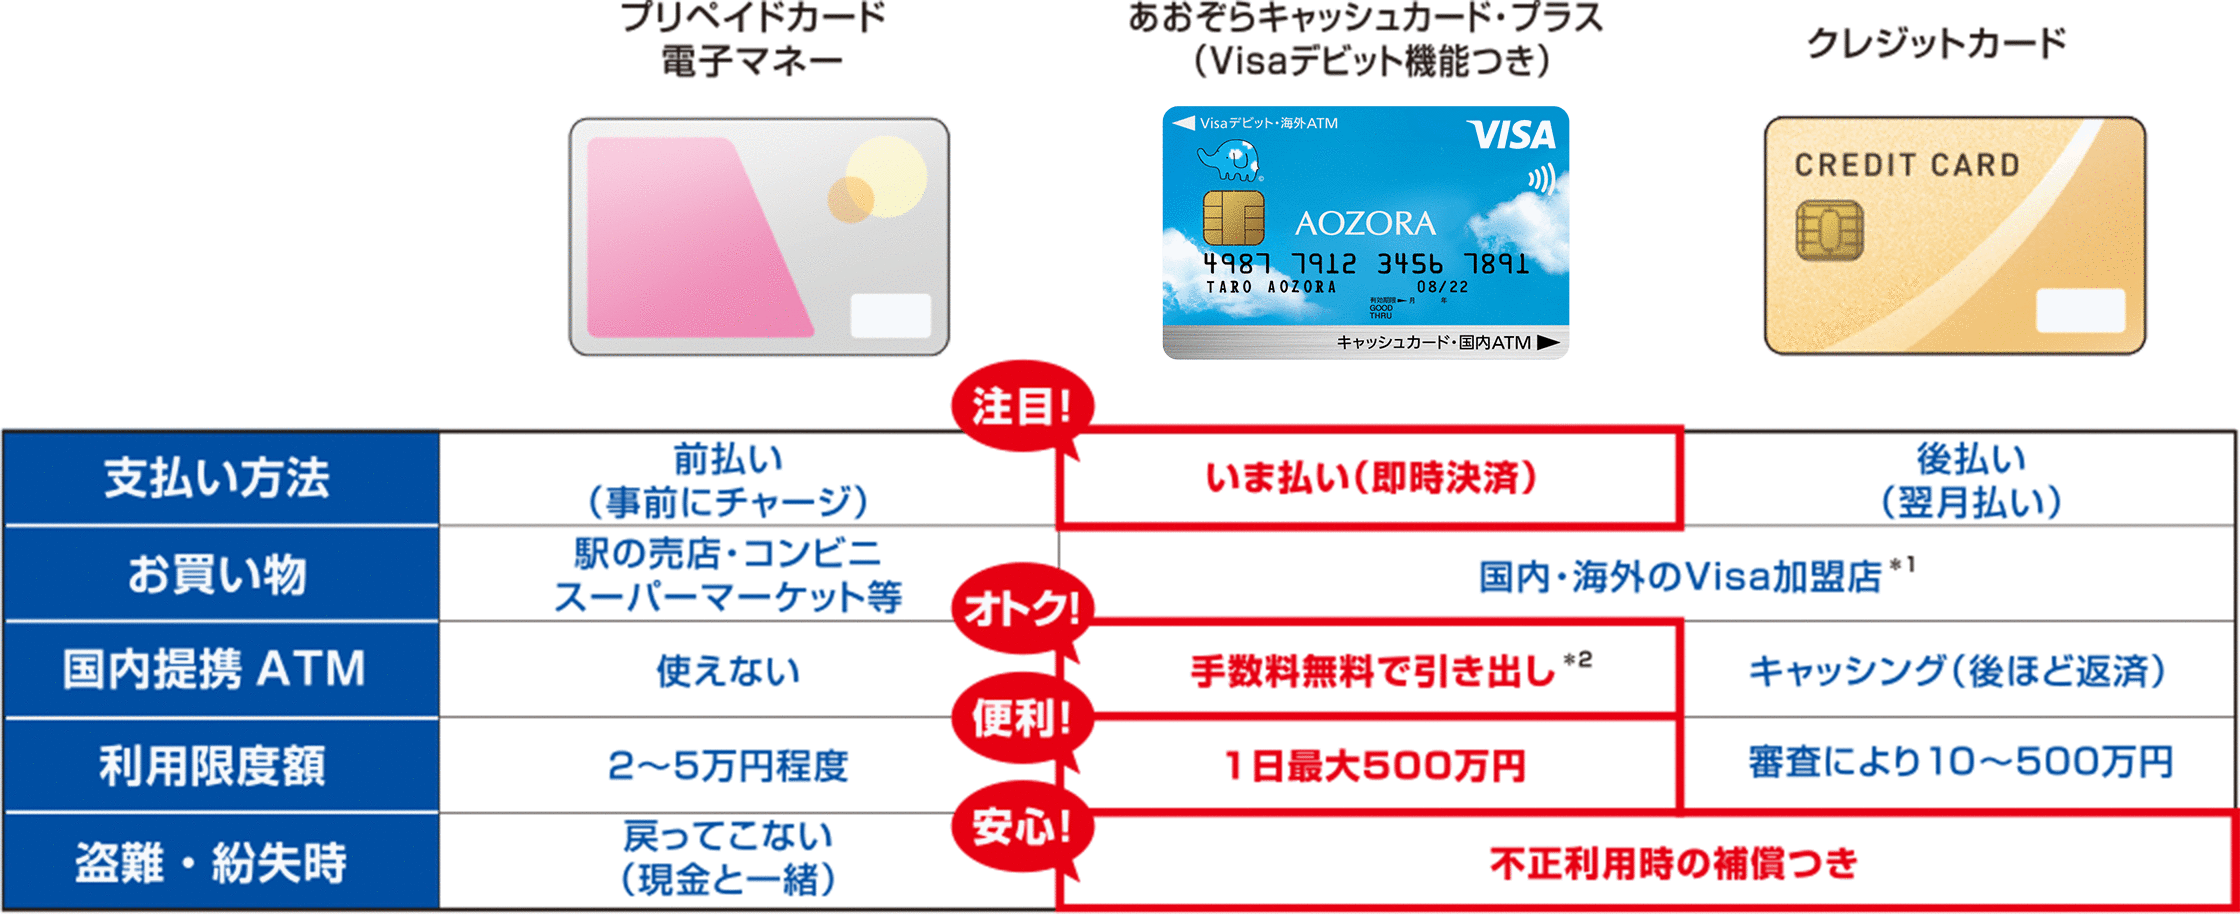 クレジットカードや電子マネーとの違いに関する画像